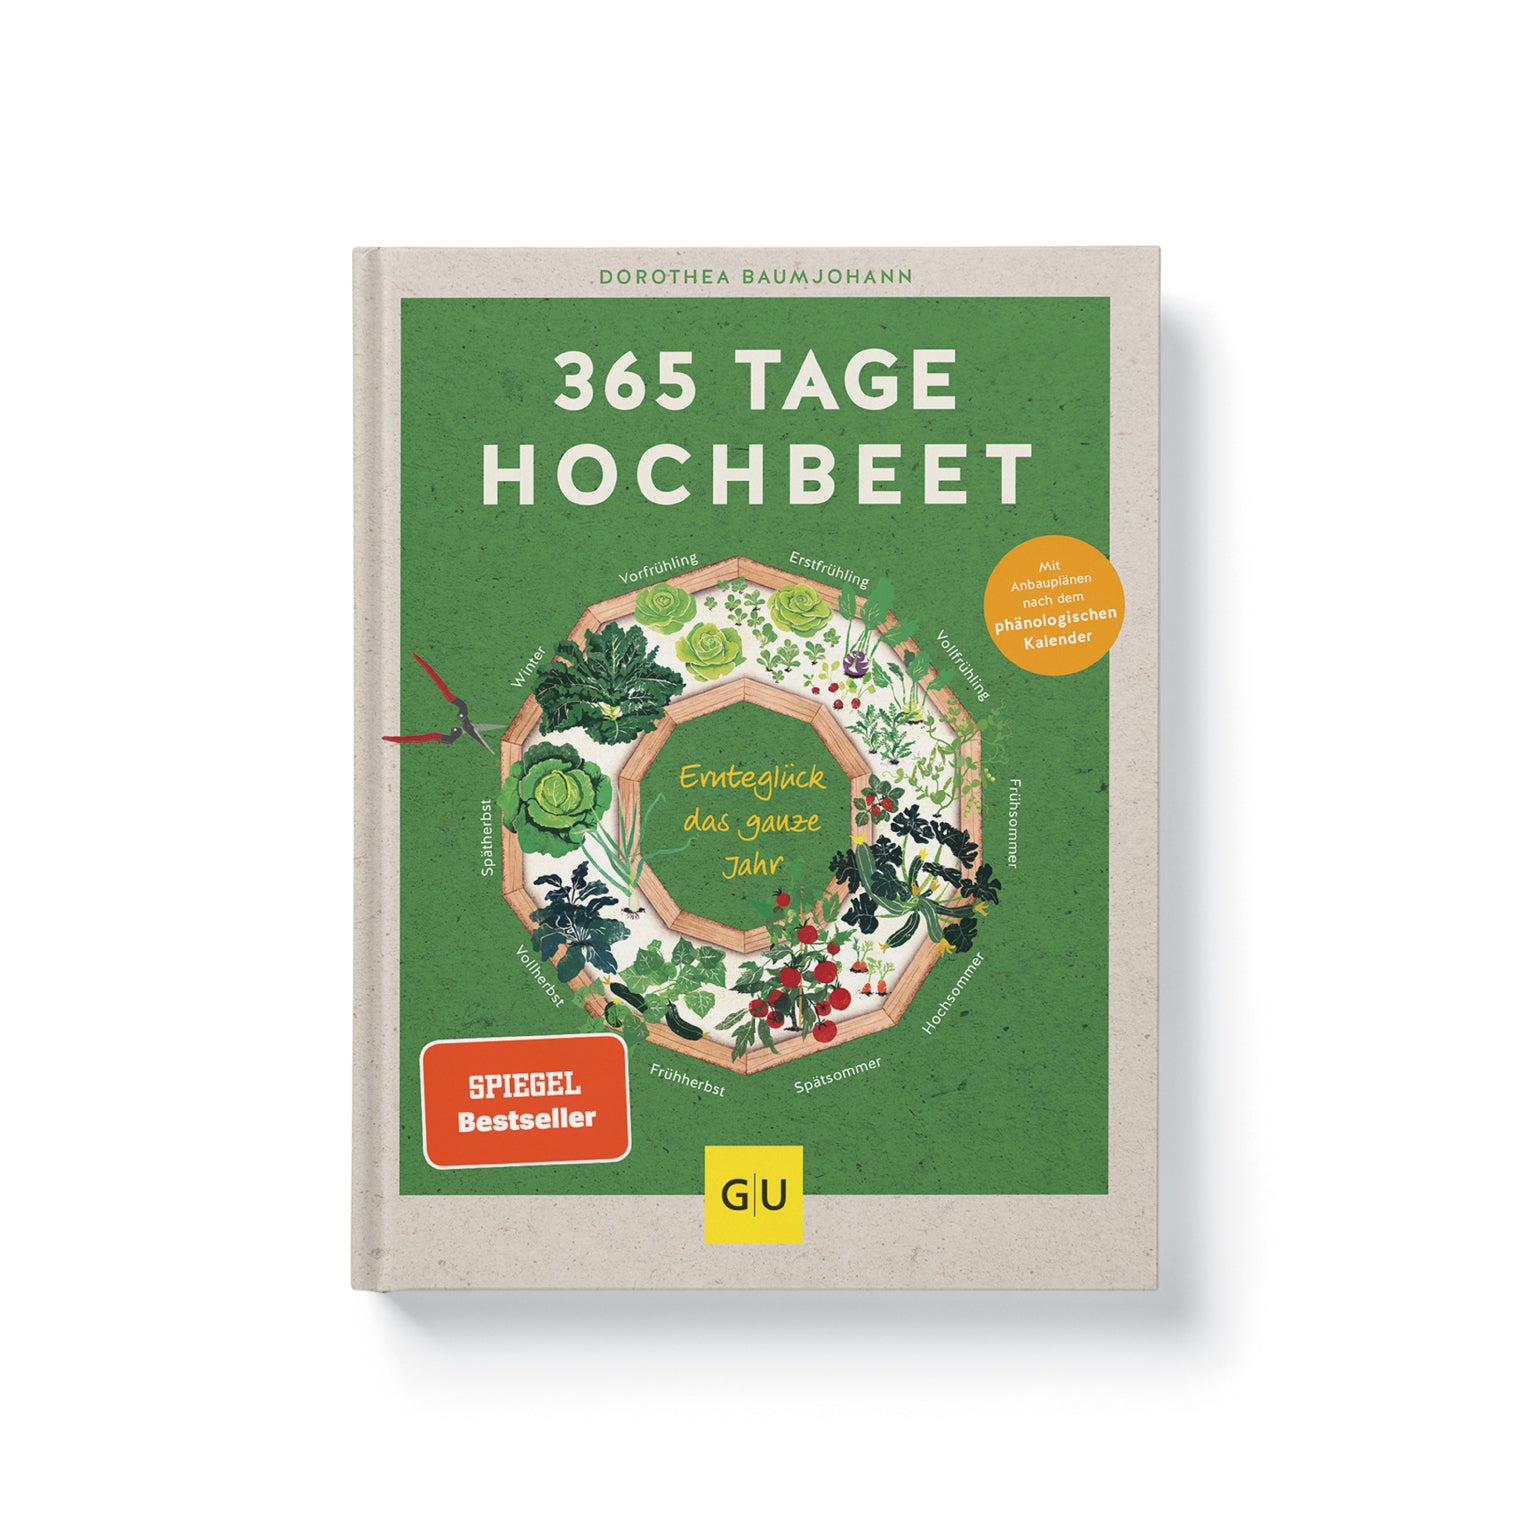 365 Tage Hochbeet: Ernteglück das ganze Jahr - Dorothea Baumjohann